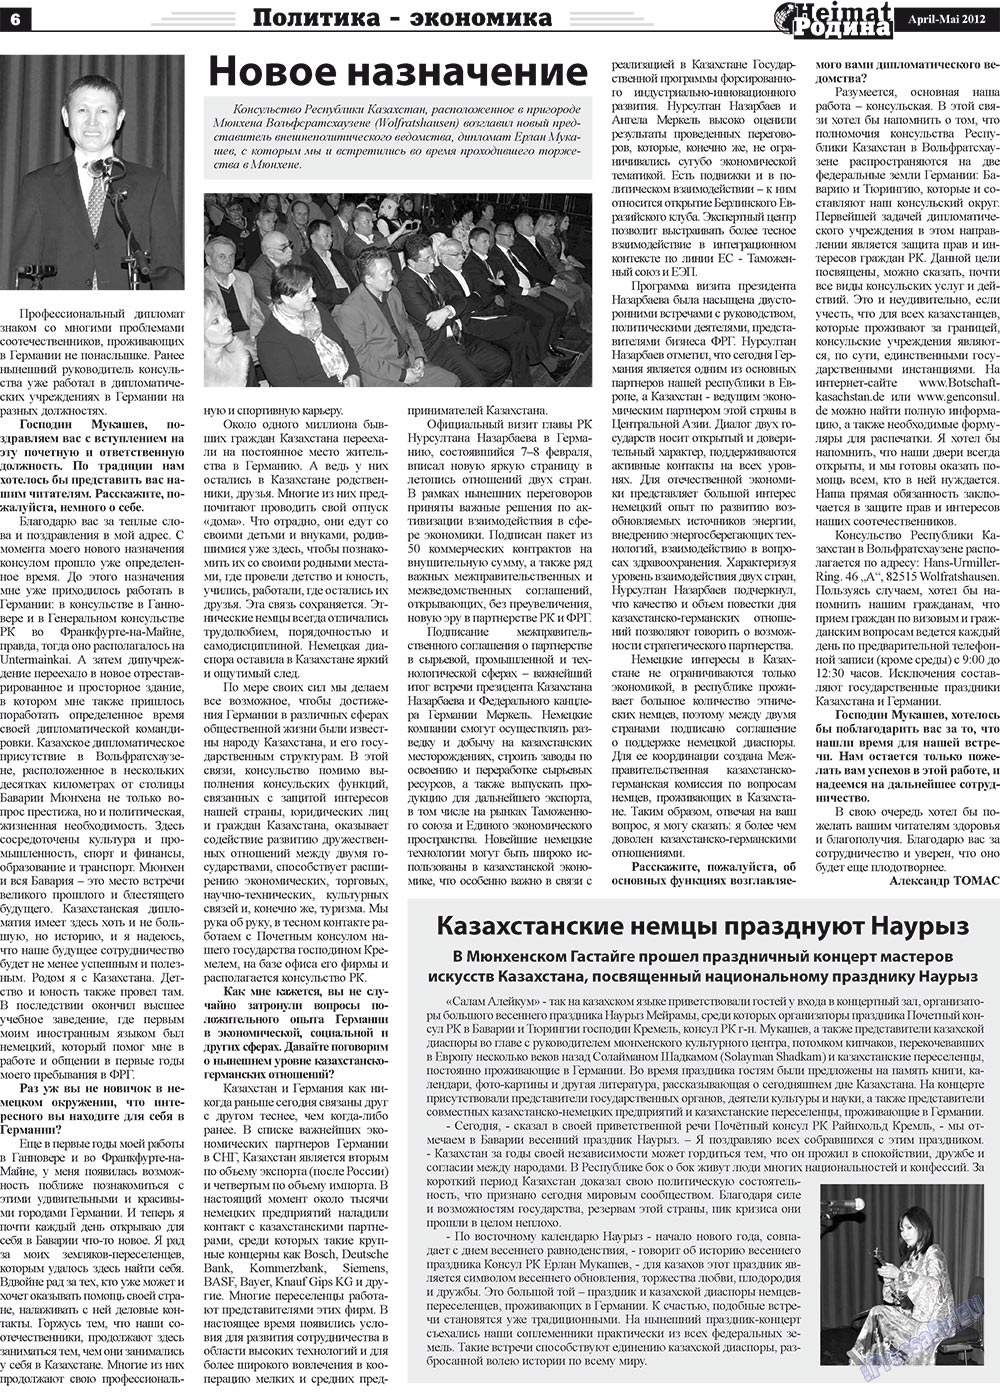 Heimat-Родина (газета). 2012 год, номер 4, стр. 6